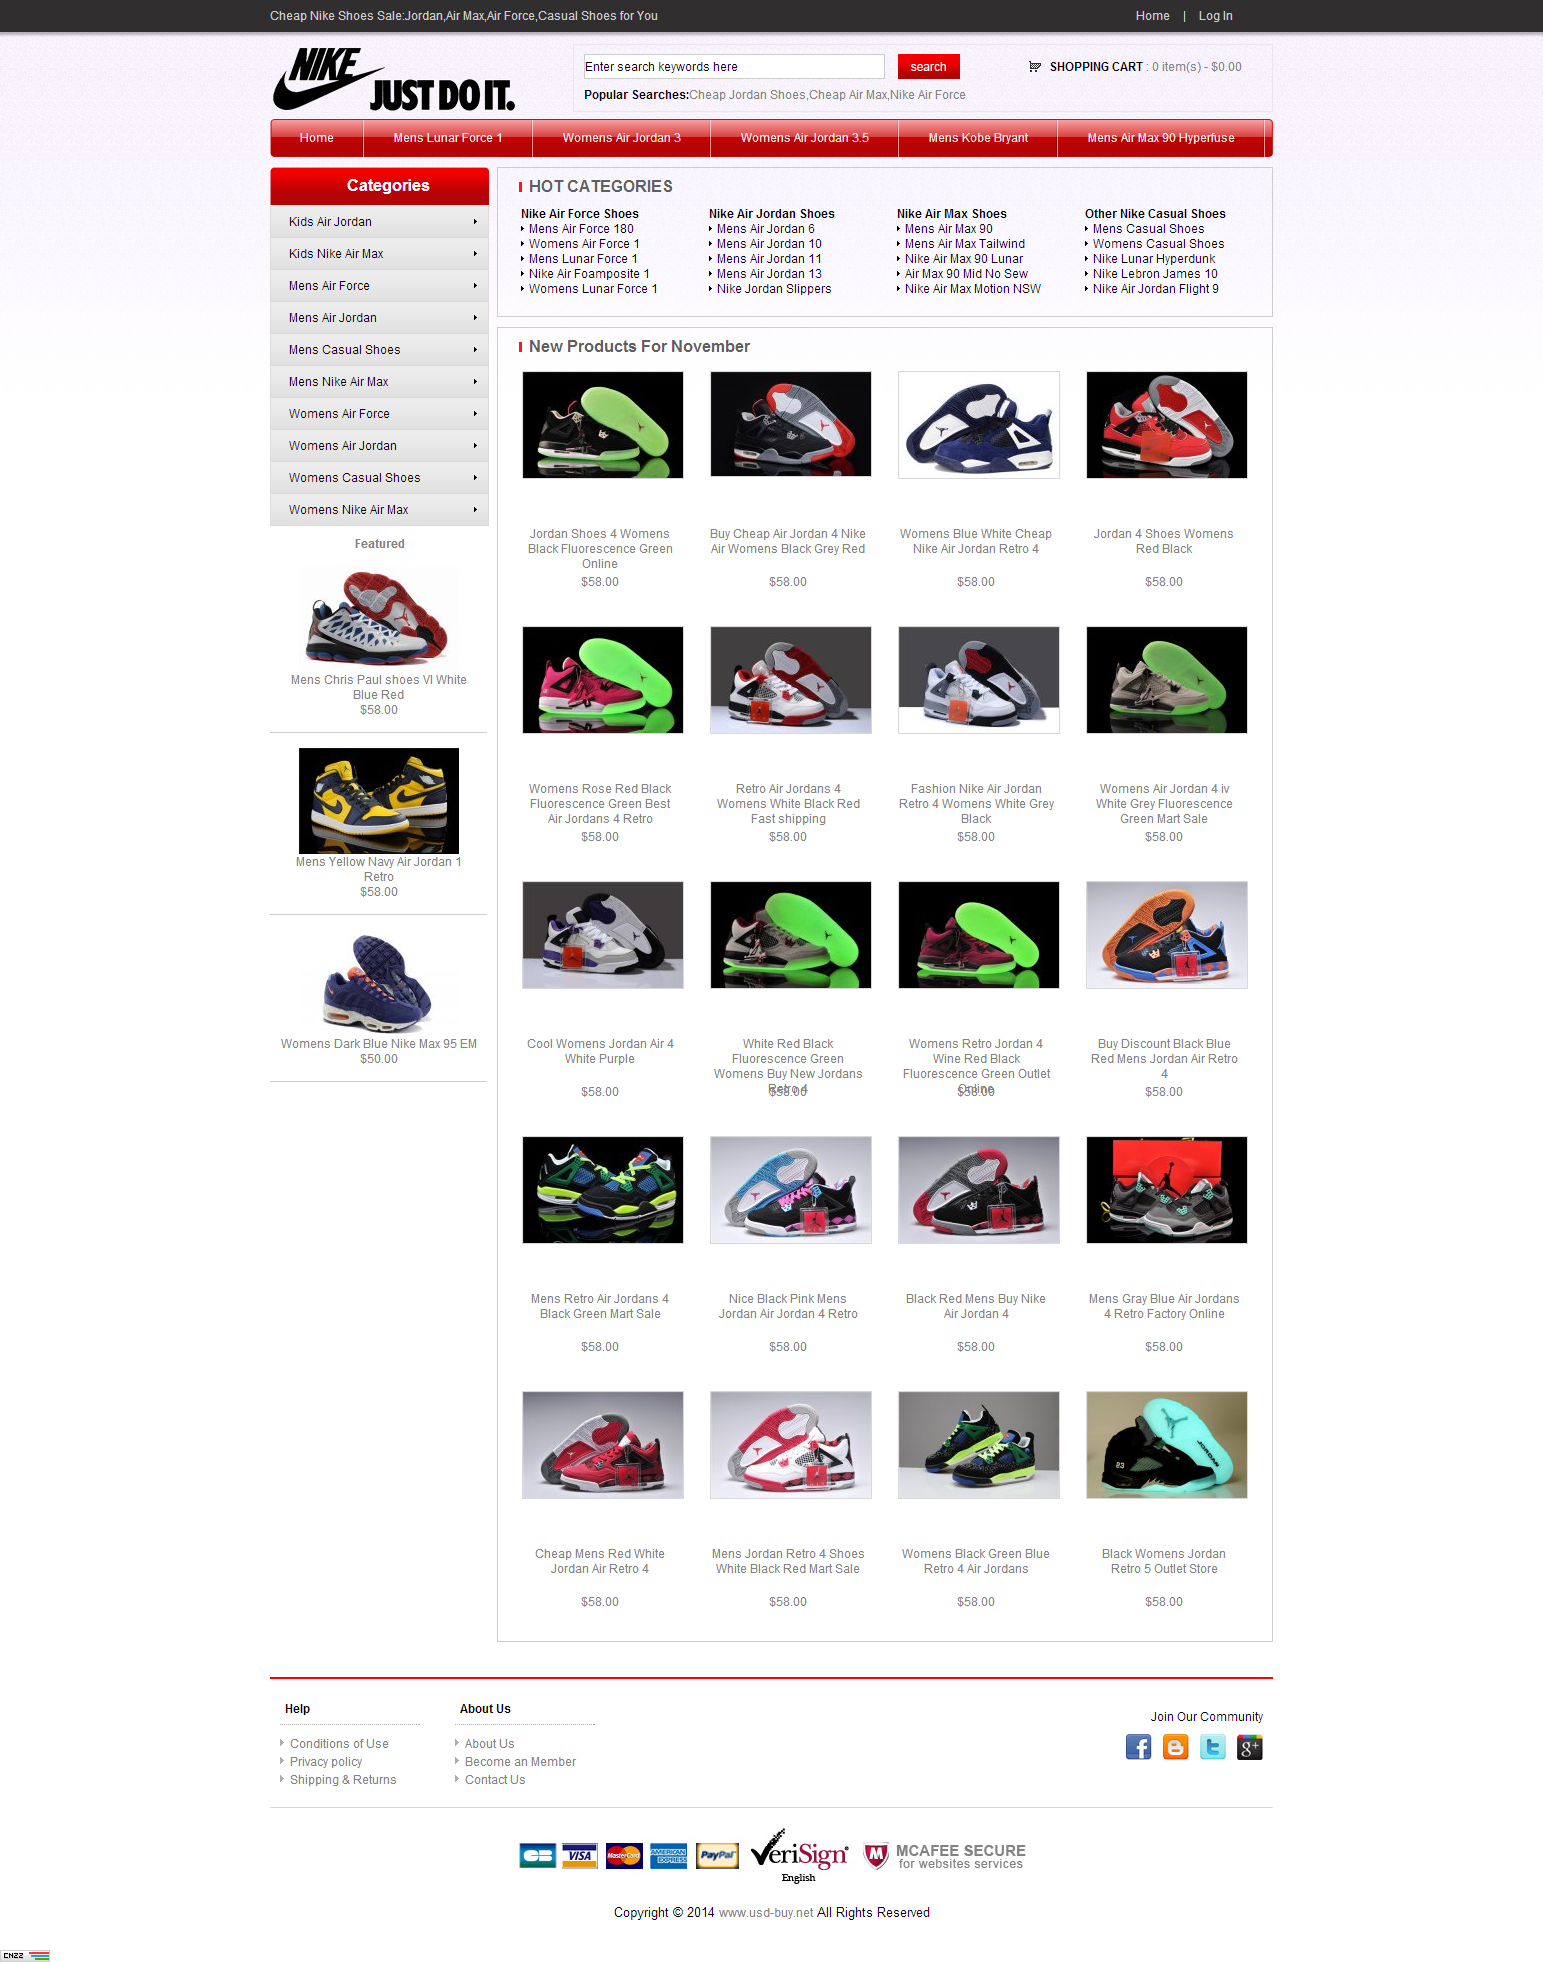 cheap jordan shoes website